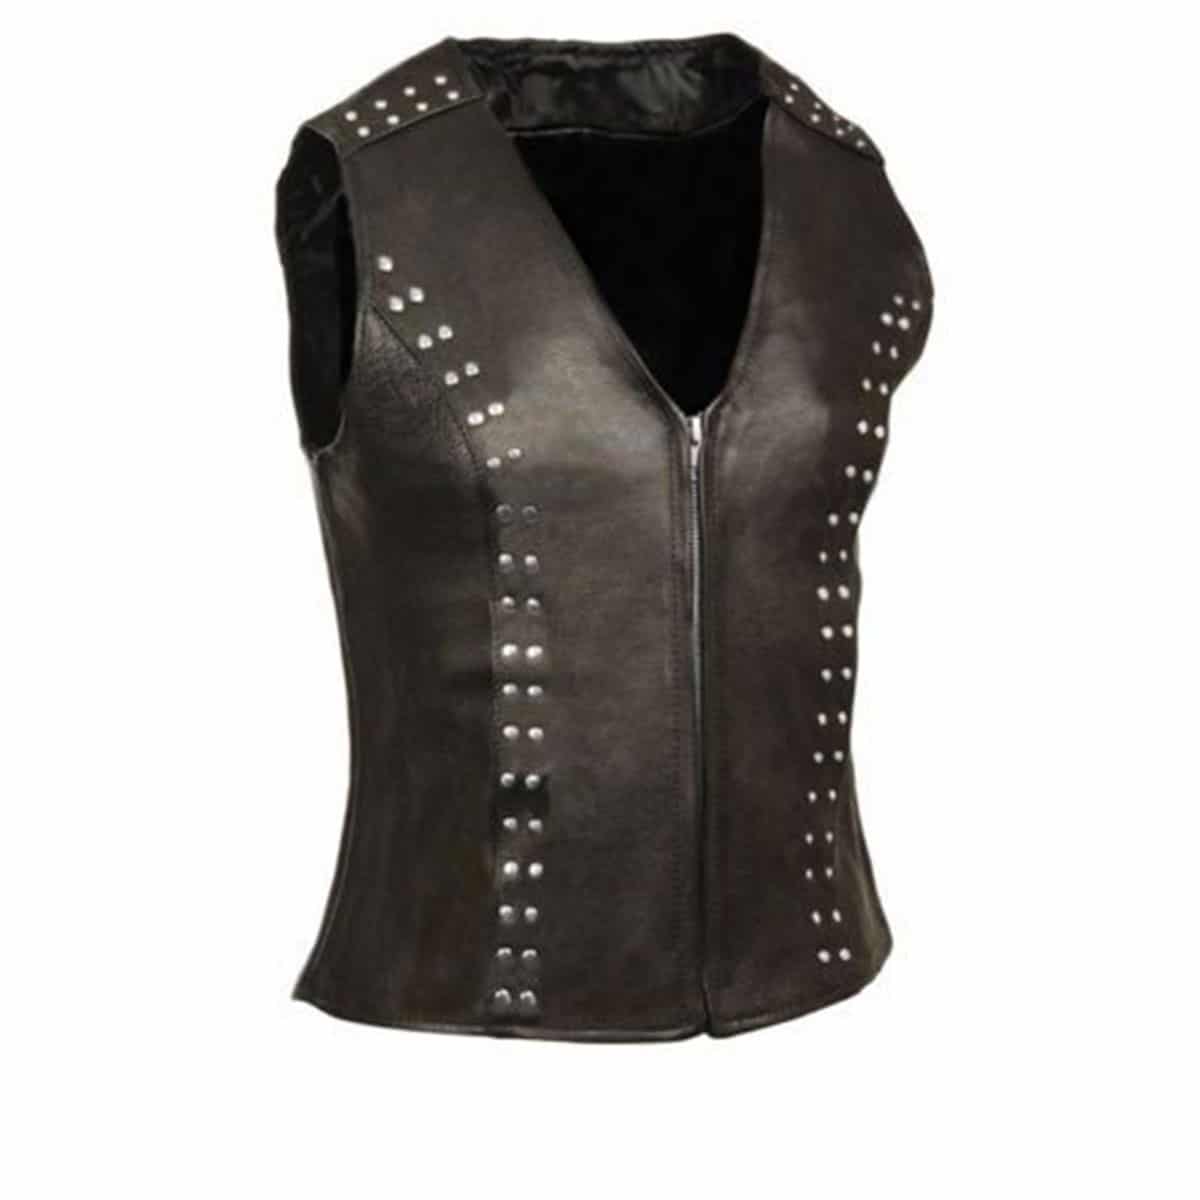 Women Black Leather Studded Vest Bikers Style Waistcoat - W5-BLK